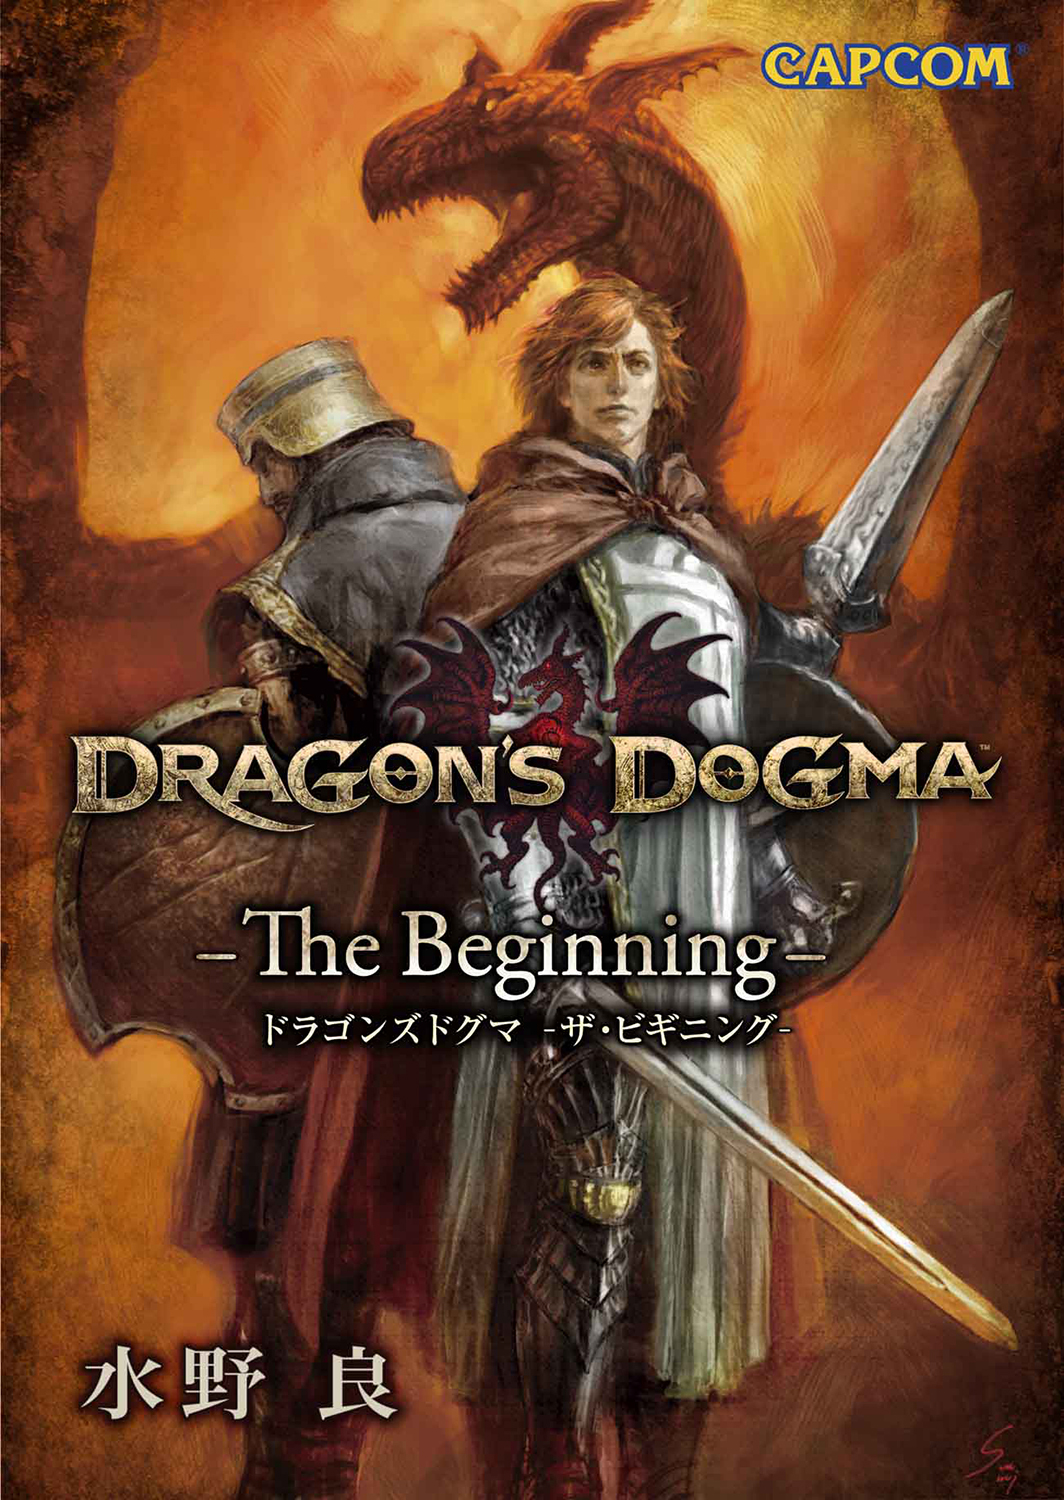 ドラゴンズドグマ ダークアリズン 公式サイトで水野良氏書き下ろし小説を公開 Game Watch